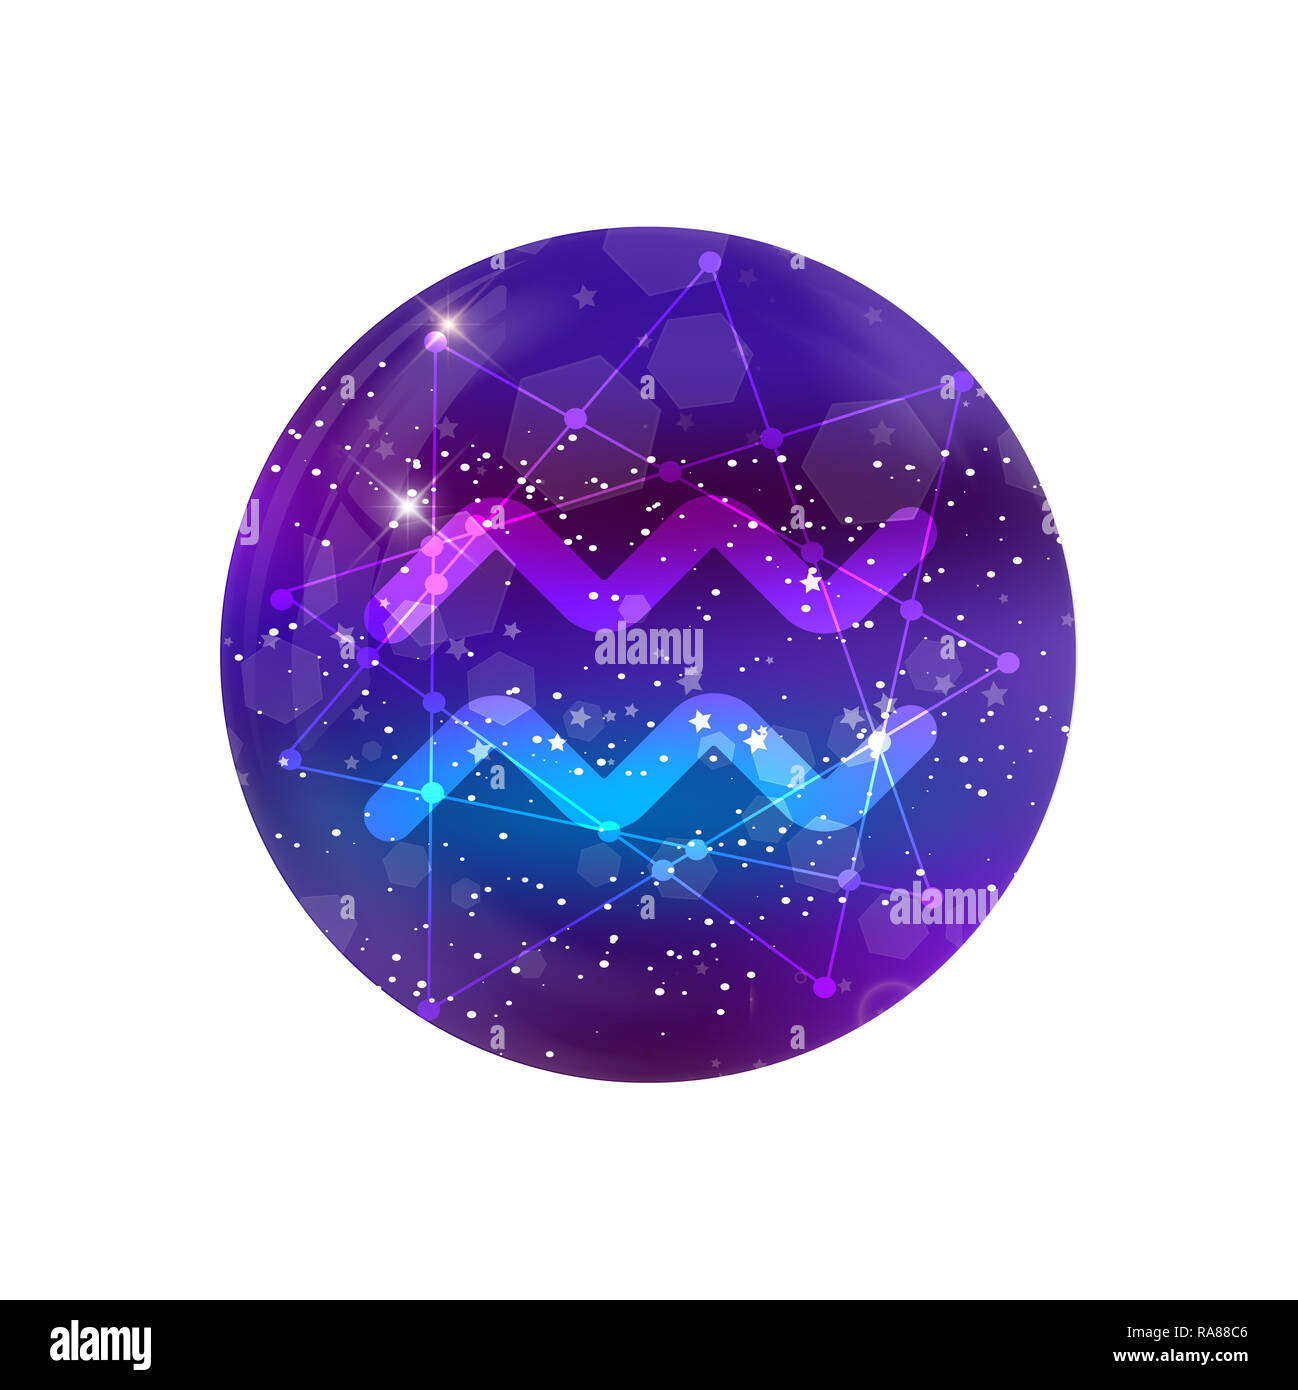 Aquarius segno zodiacale e costellazione sul cosmica cielo viola con stelle luccicanti e nebula isolati su sfondo bianco neon icona del design, il pulsante WEB Foto Stock